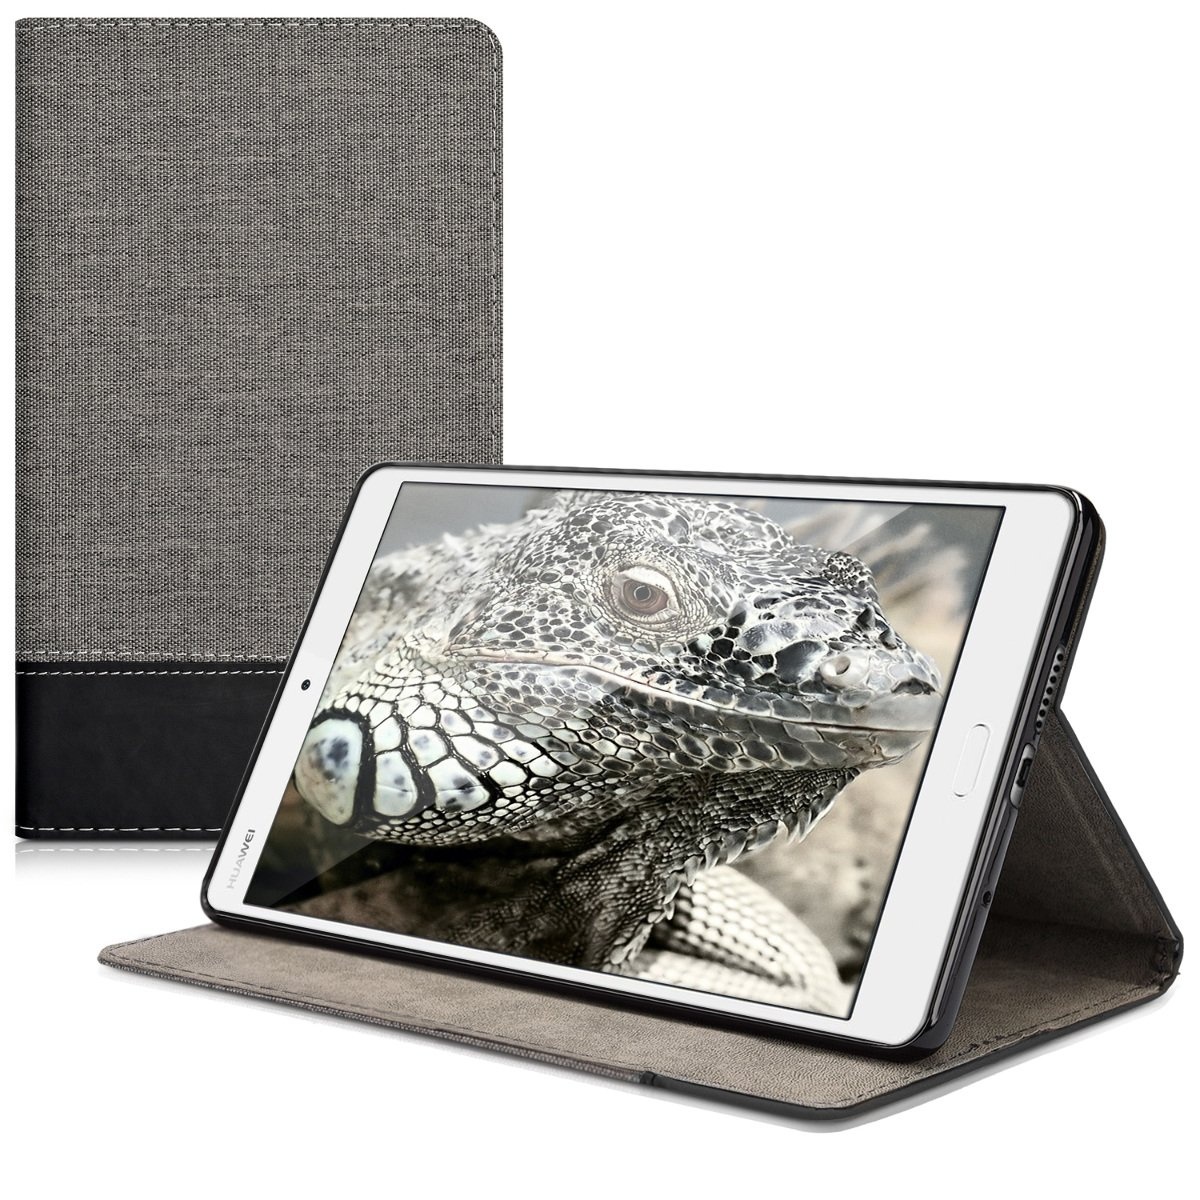 kwmobile Schutzhülle kompatibel mit Huawei MediaPad M3 8.4 - Hülle Slim - Tablet Cover Case mit Ständer Grau Schwarz